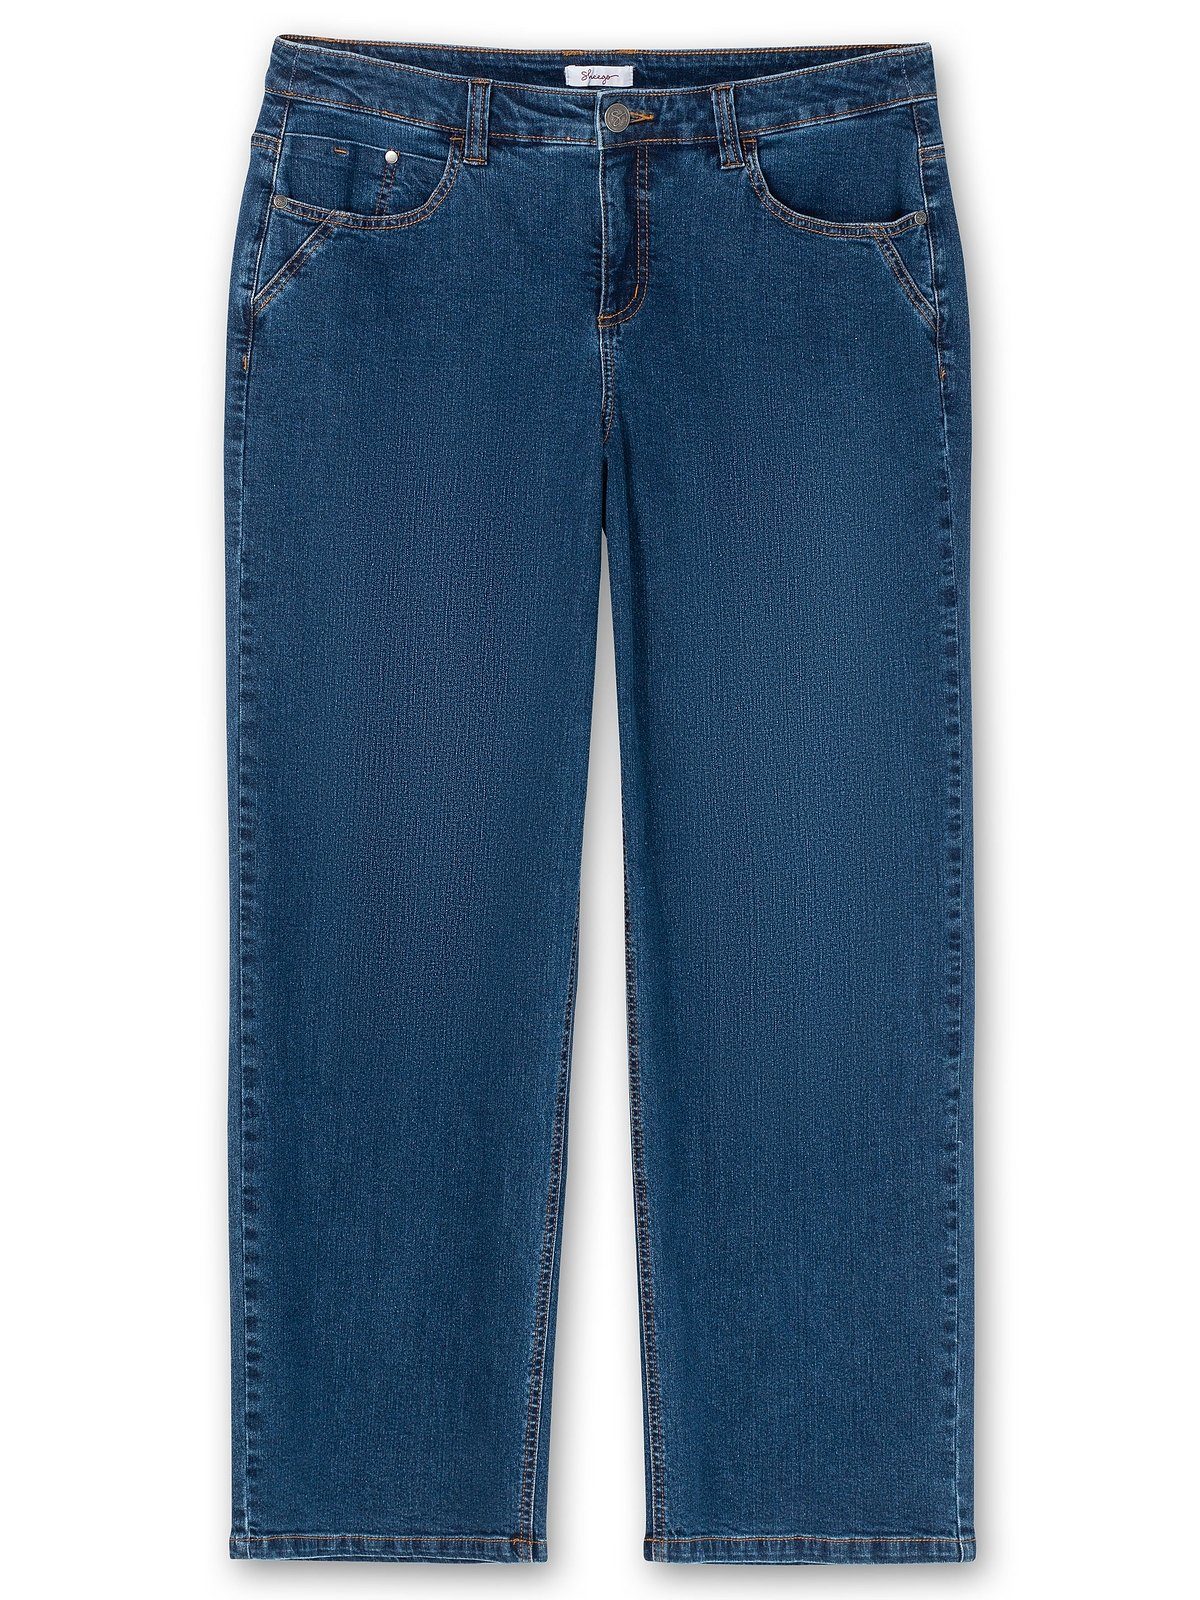 Sheego Weite Jeans Große kräftige Denim ELLA blue Größen für Waden dark Oberschenkel und